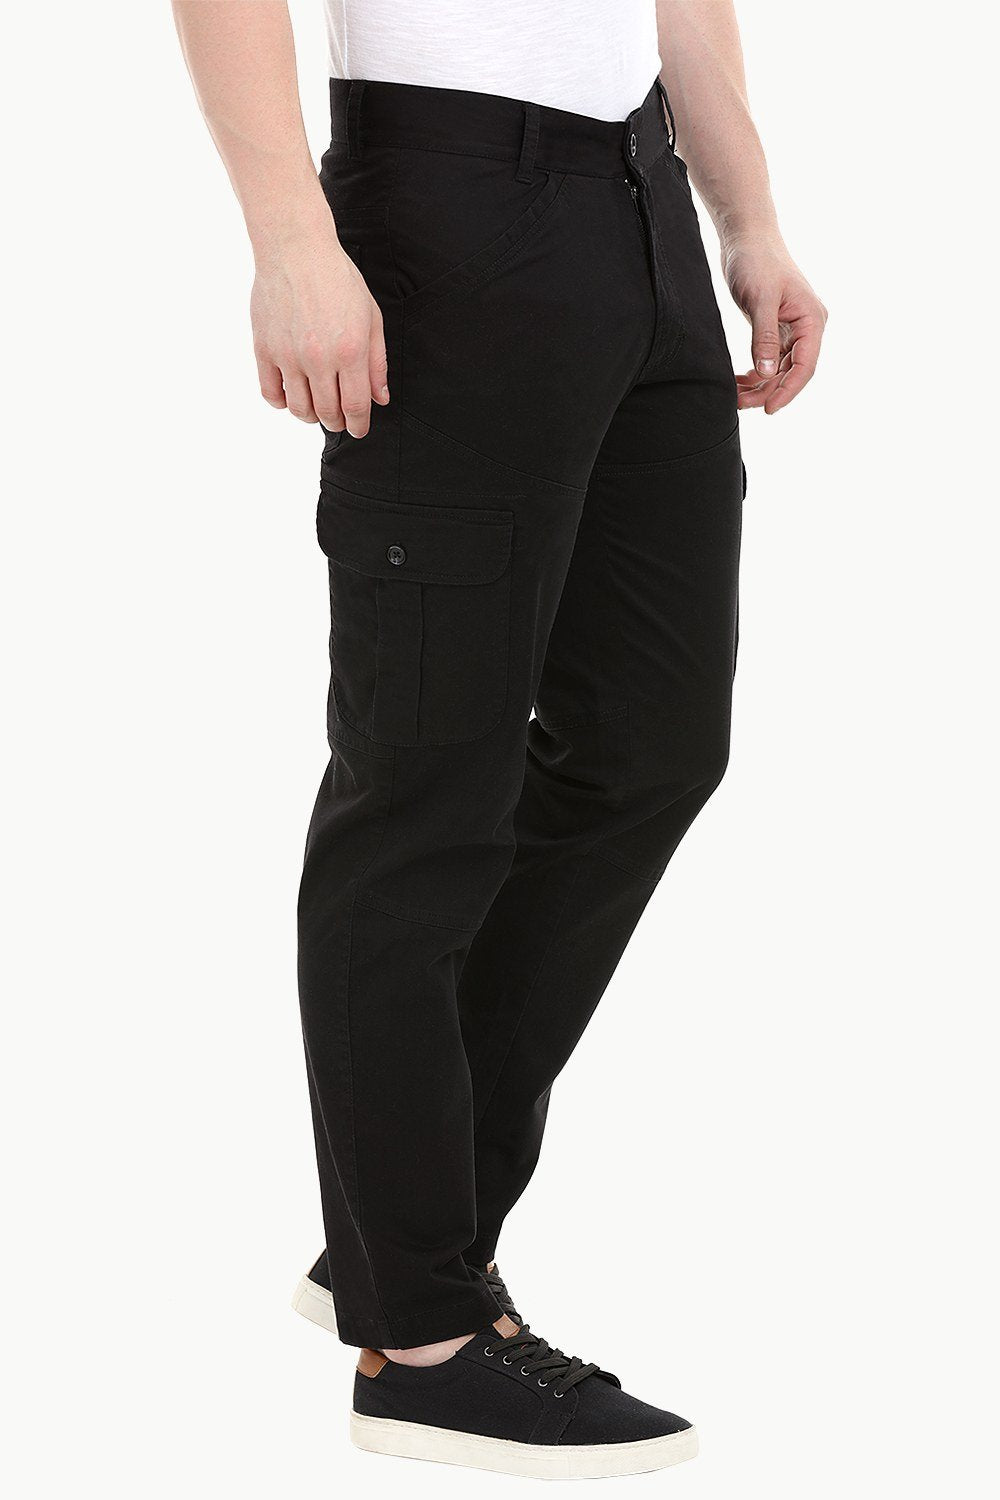 Bundle Harem Pants - 2XL Black | Mens outfits, Cargo pants men, Black cargo  pants